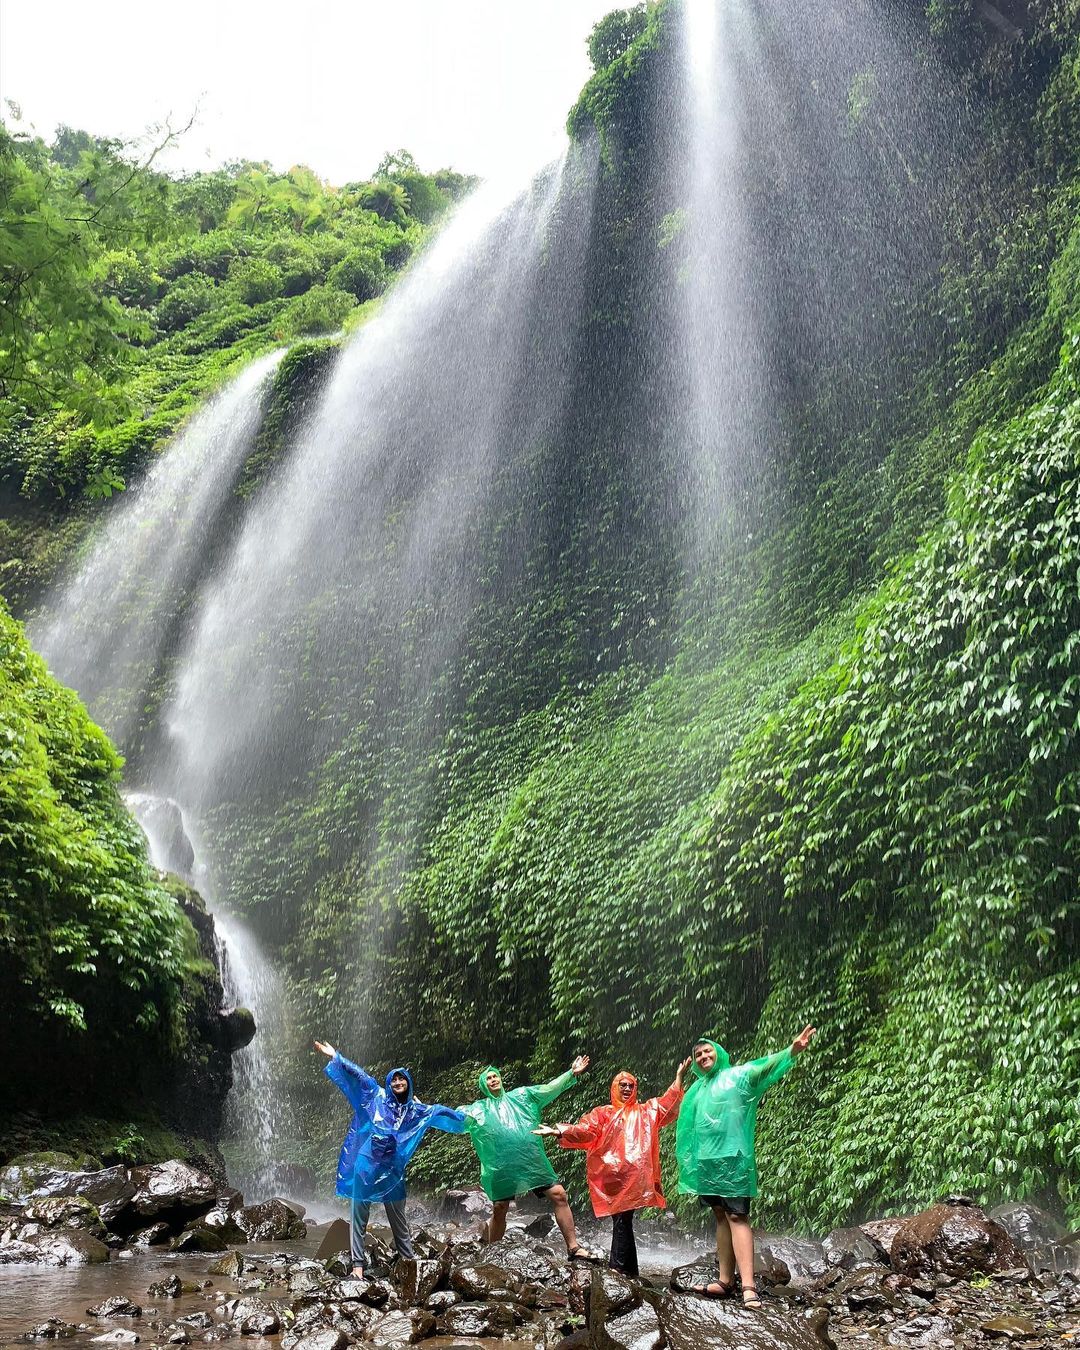 madakaripura waterfalls in Indonesia